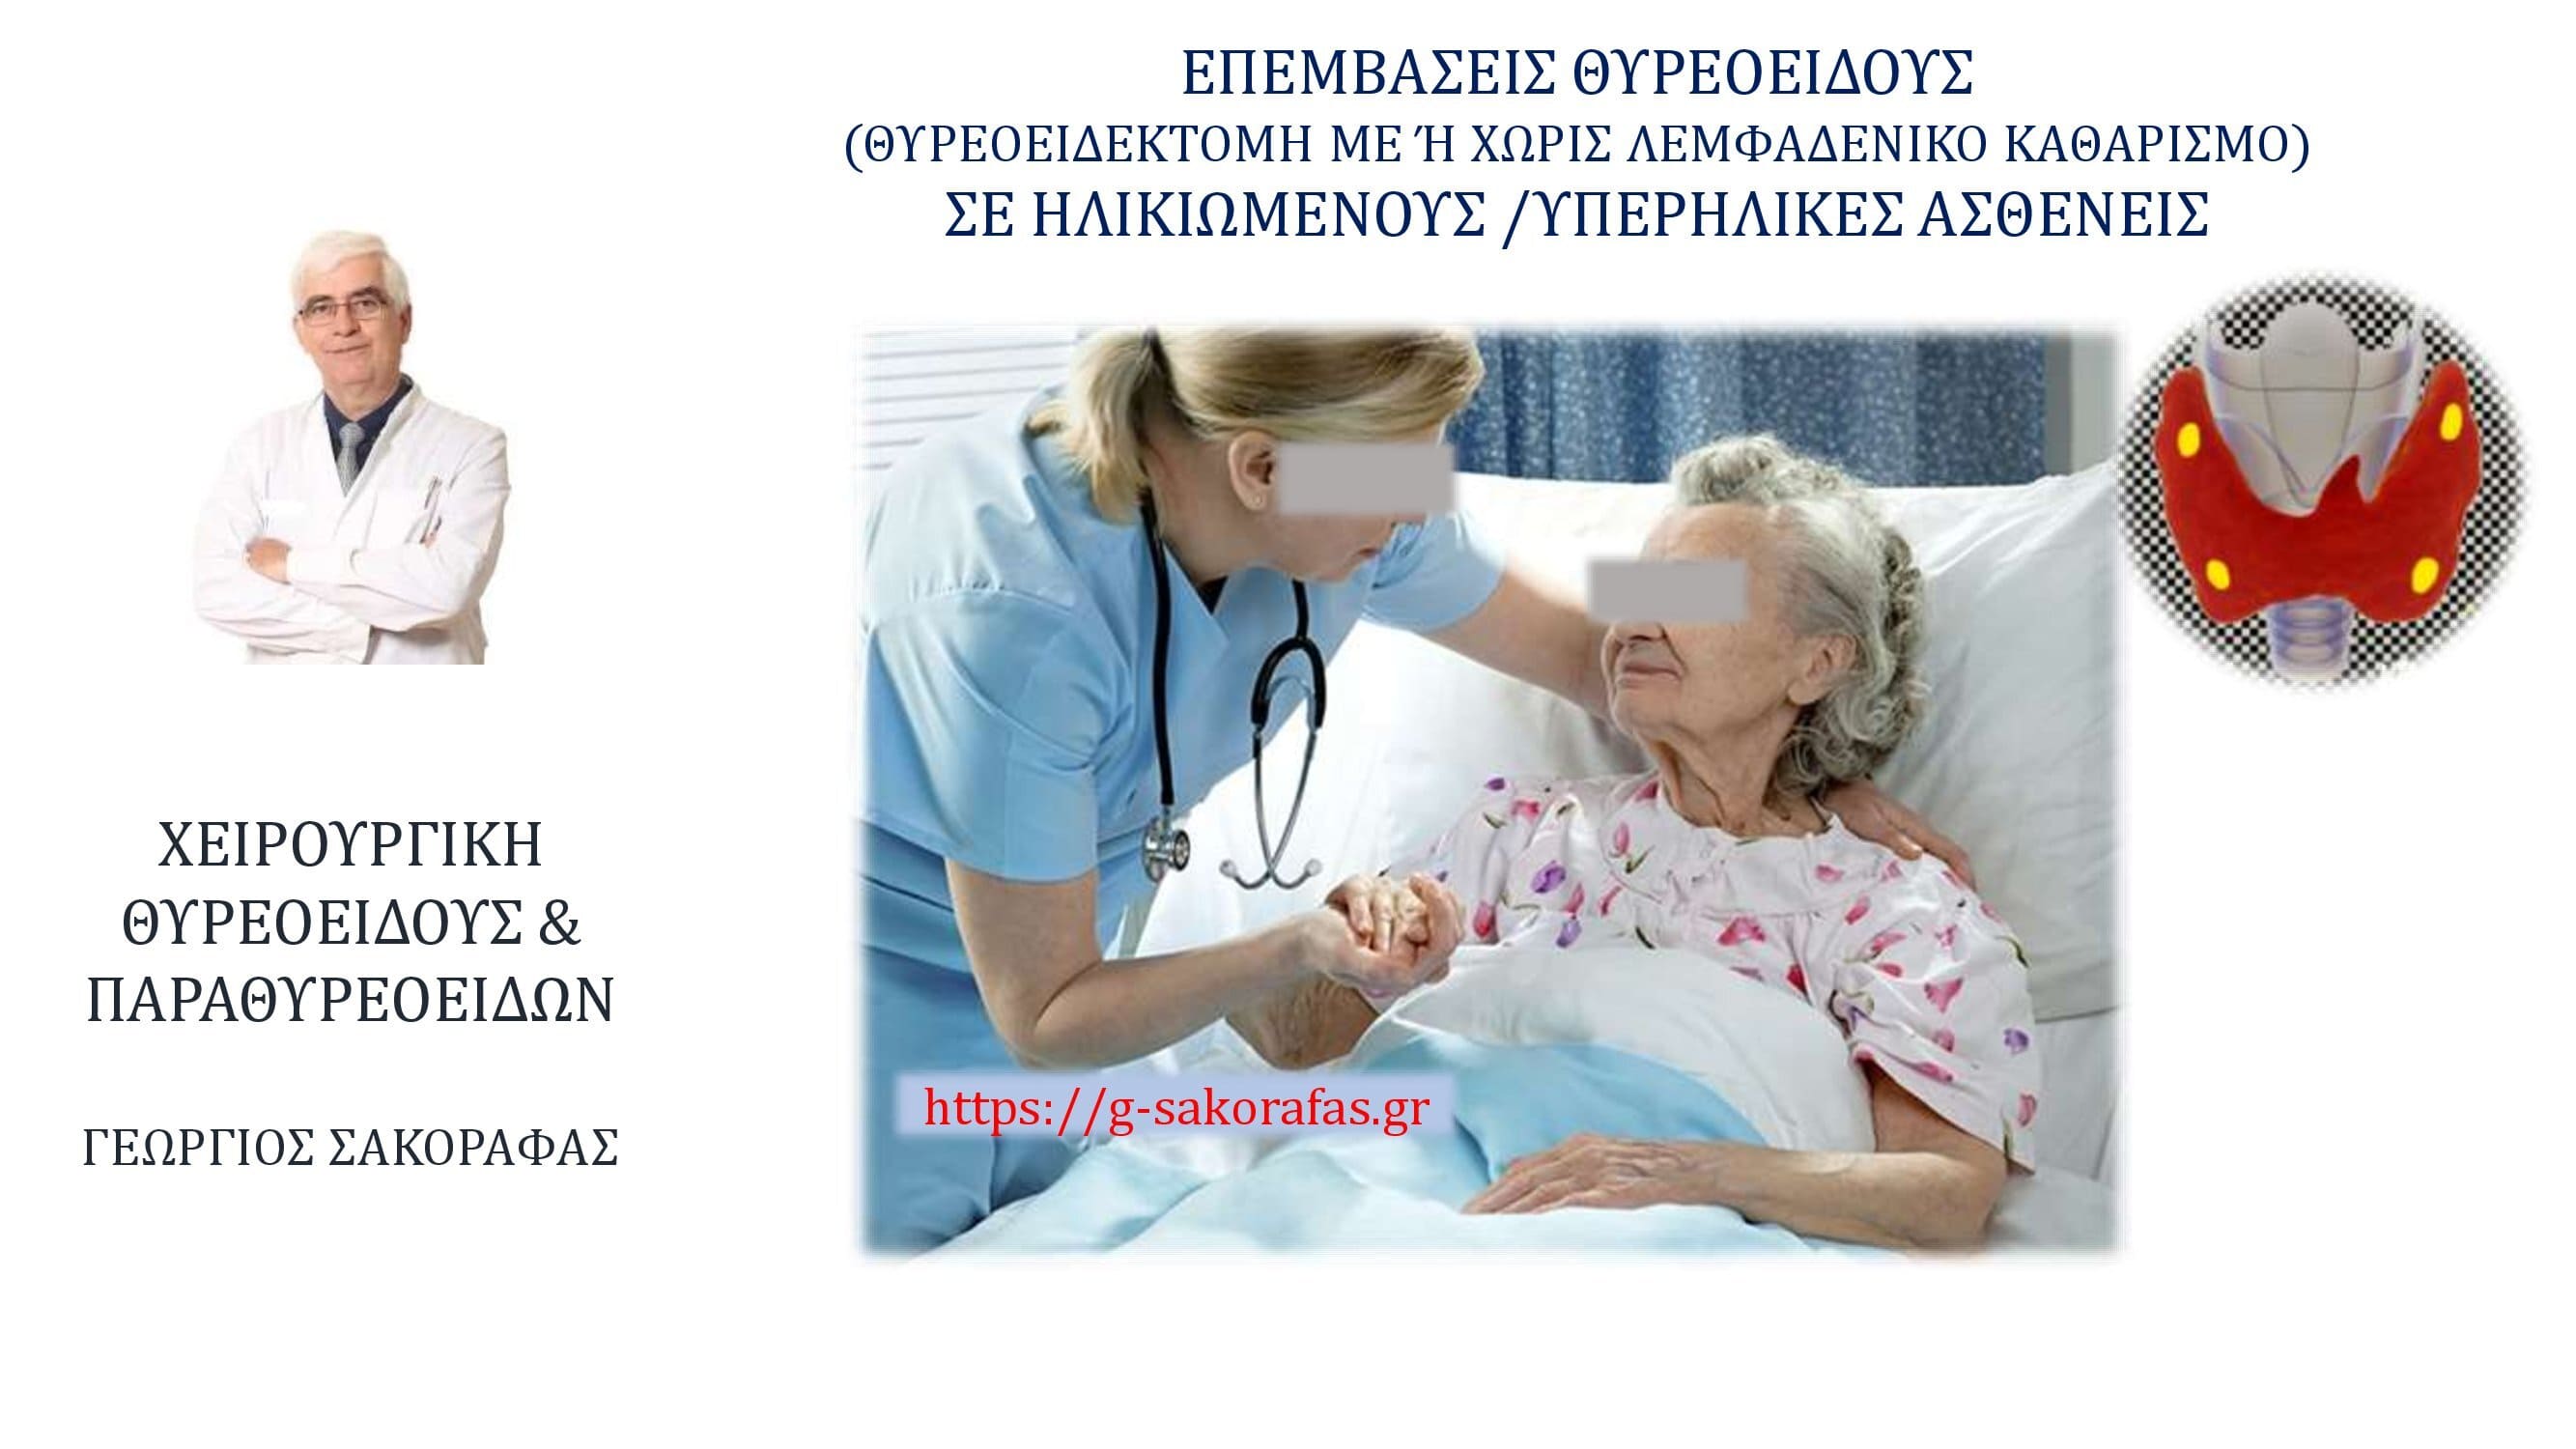 Επεμβάσεις θυρεοειδούς (θυρεοειδεκτομή +/ – λεμφαδενικός καθαρισμός) και ηλικιωμένοι/υπερήλικες ασθενείς-Ηλικία και η σημασία της